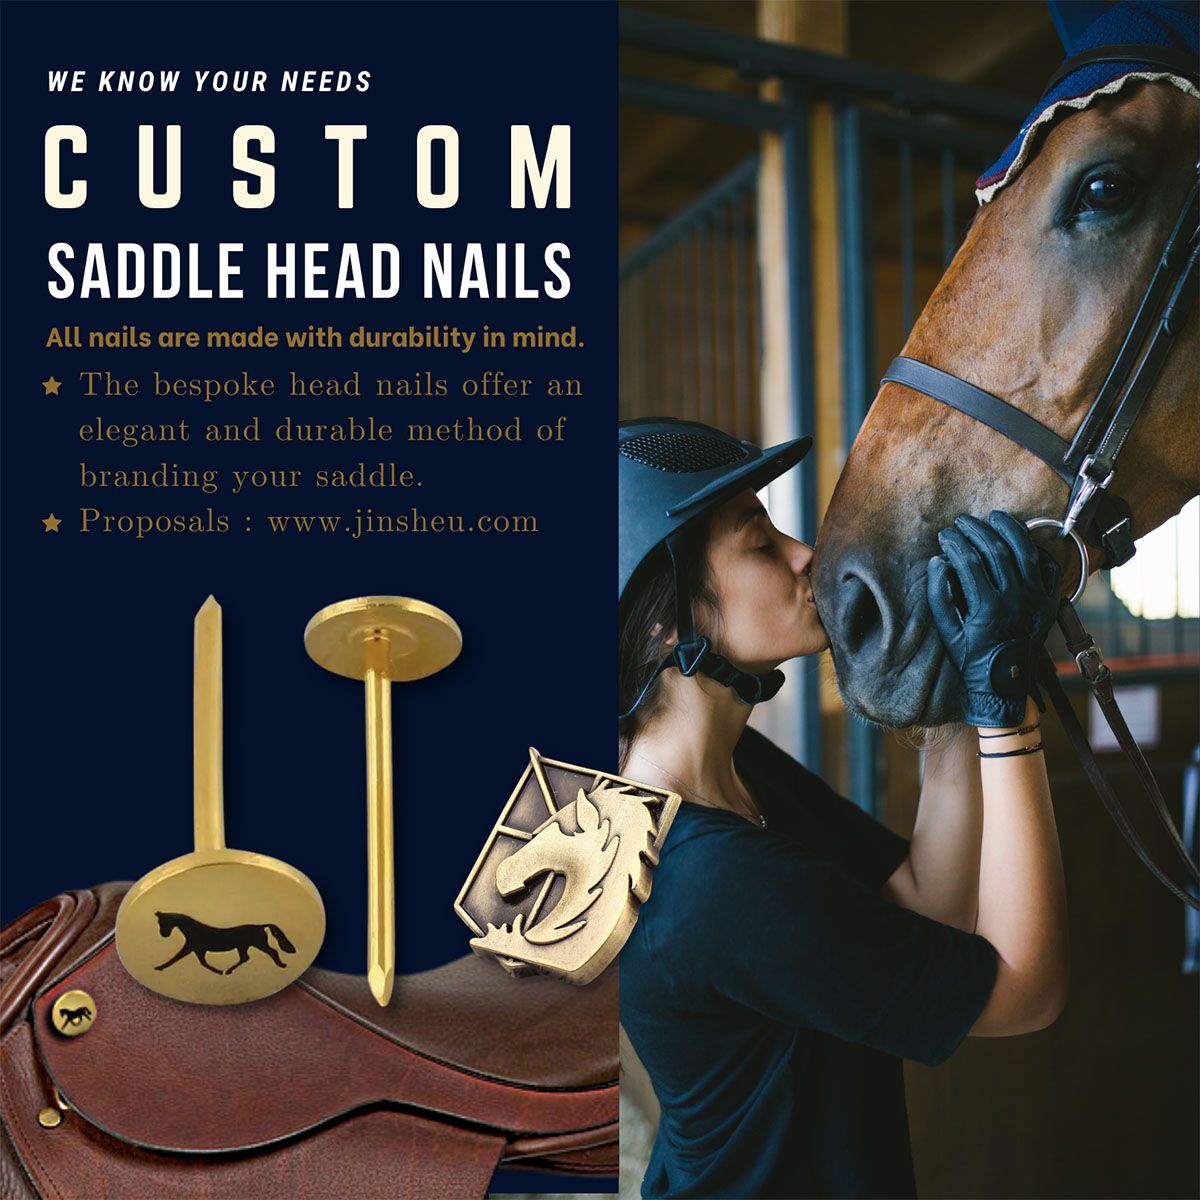 O prego de metal personalizado à base de latão certamente impressionará qualquer amante de cavalos.